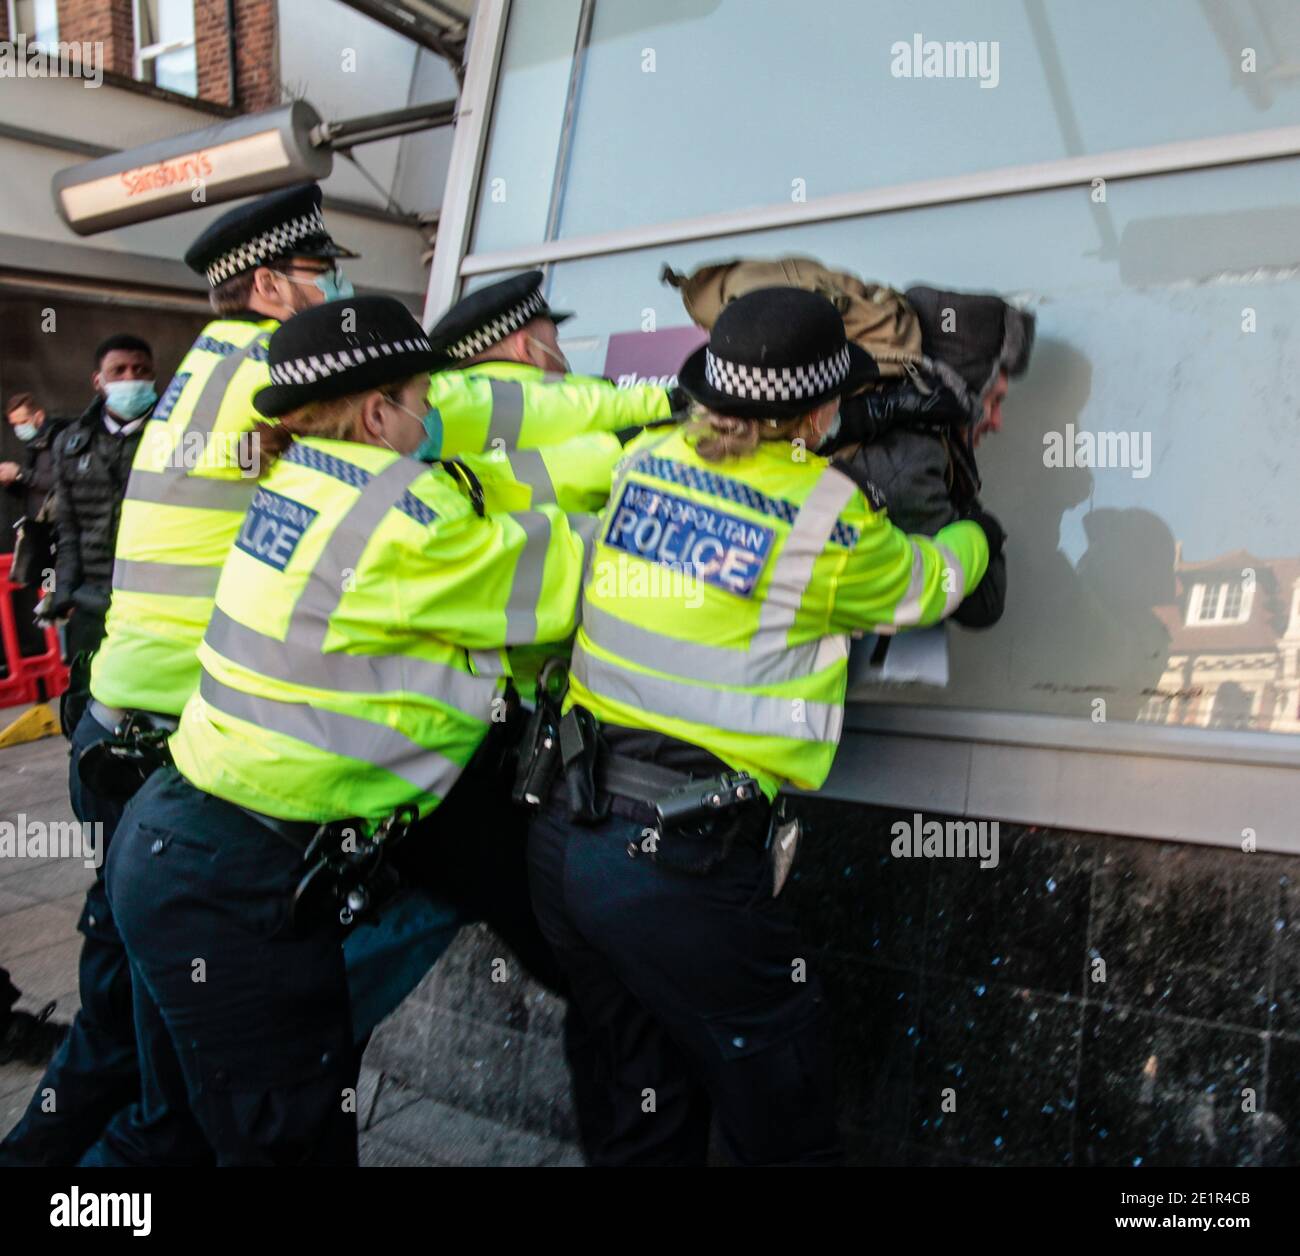 Londres Reino Unido 09 de enero de 2021 los manifestantes anti-encierro se enfrentaron con la policía En Clapham High Street.Paul Quezada-Neiman/Alamy Live News Foto de stock